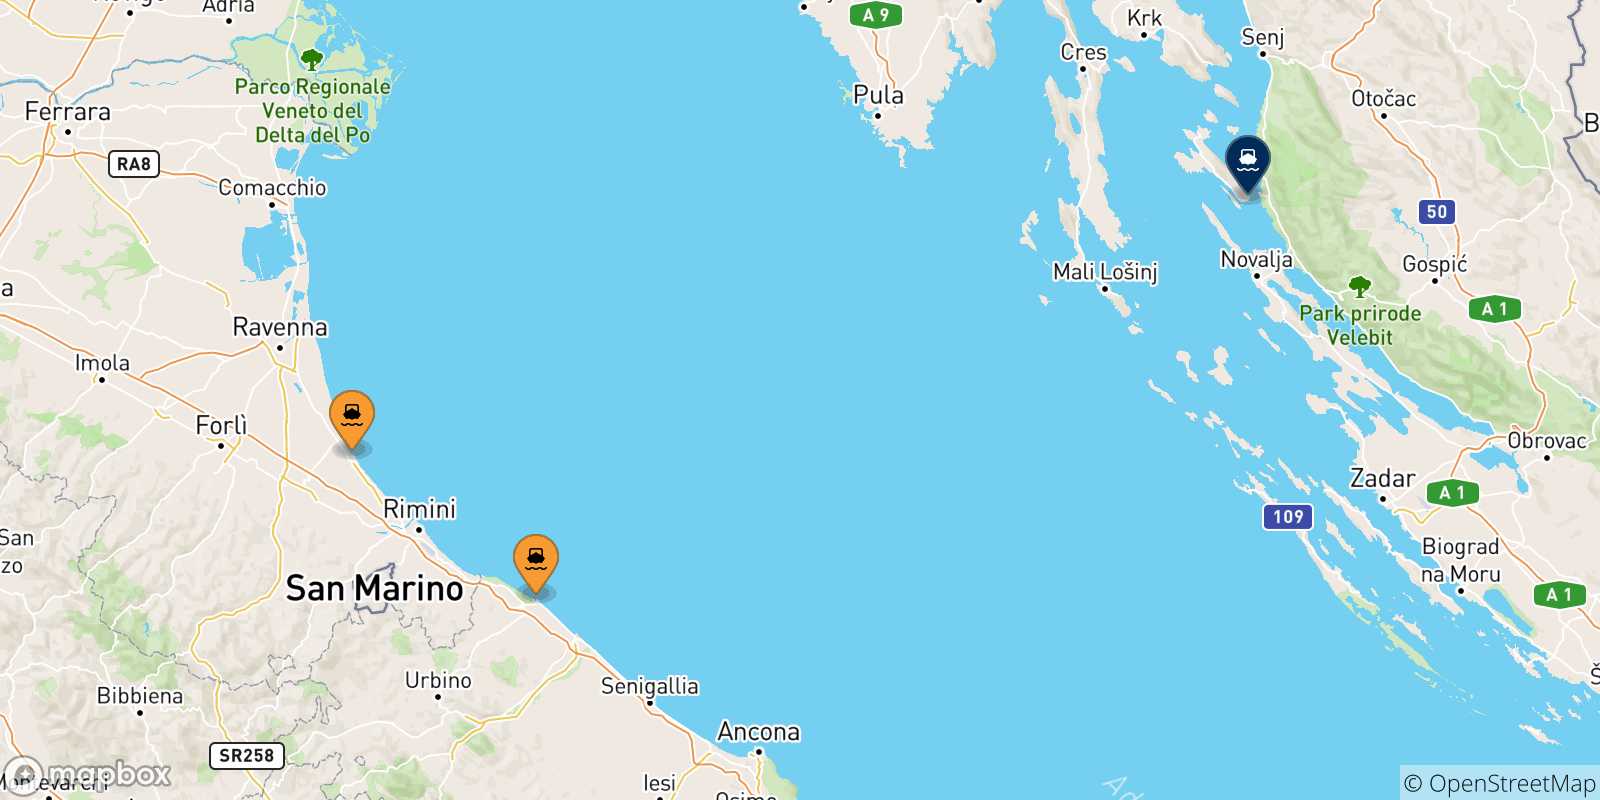 Mappa delle possibili rotte tra l'Italia e Rab